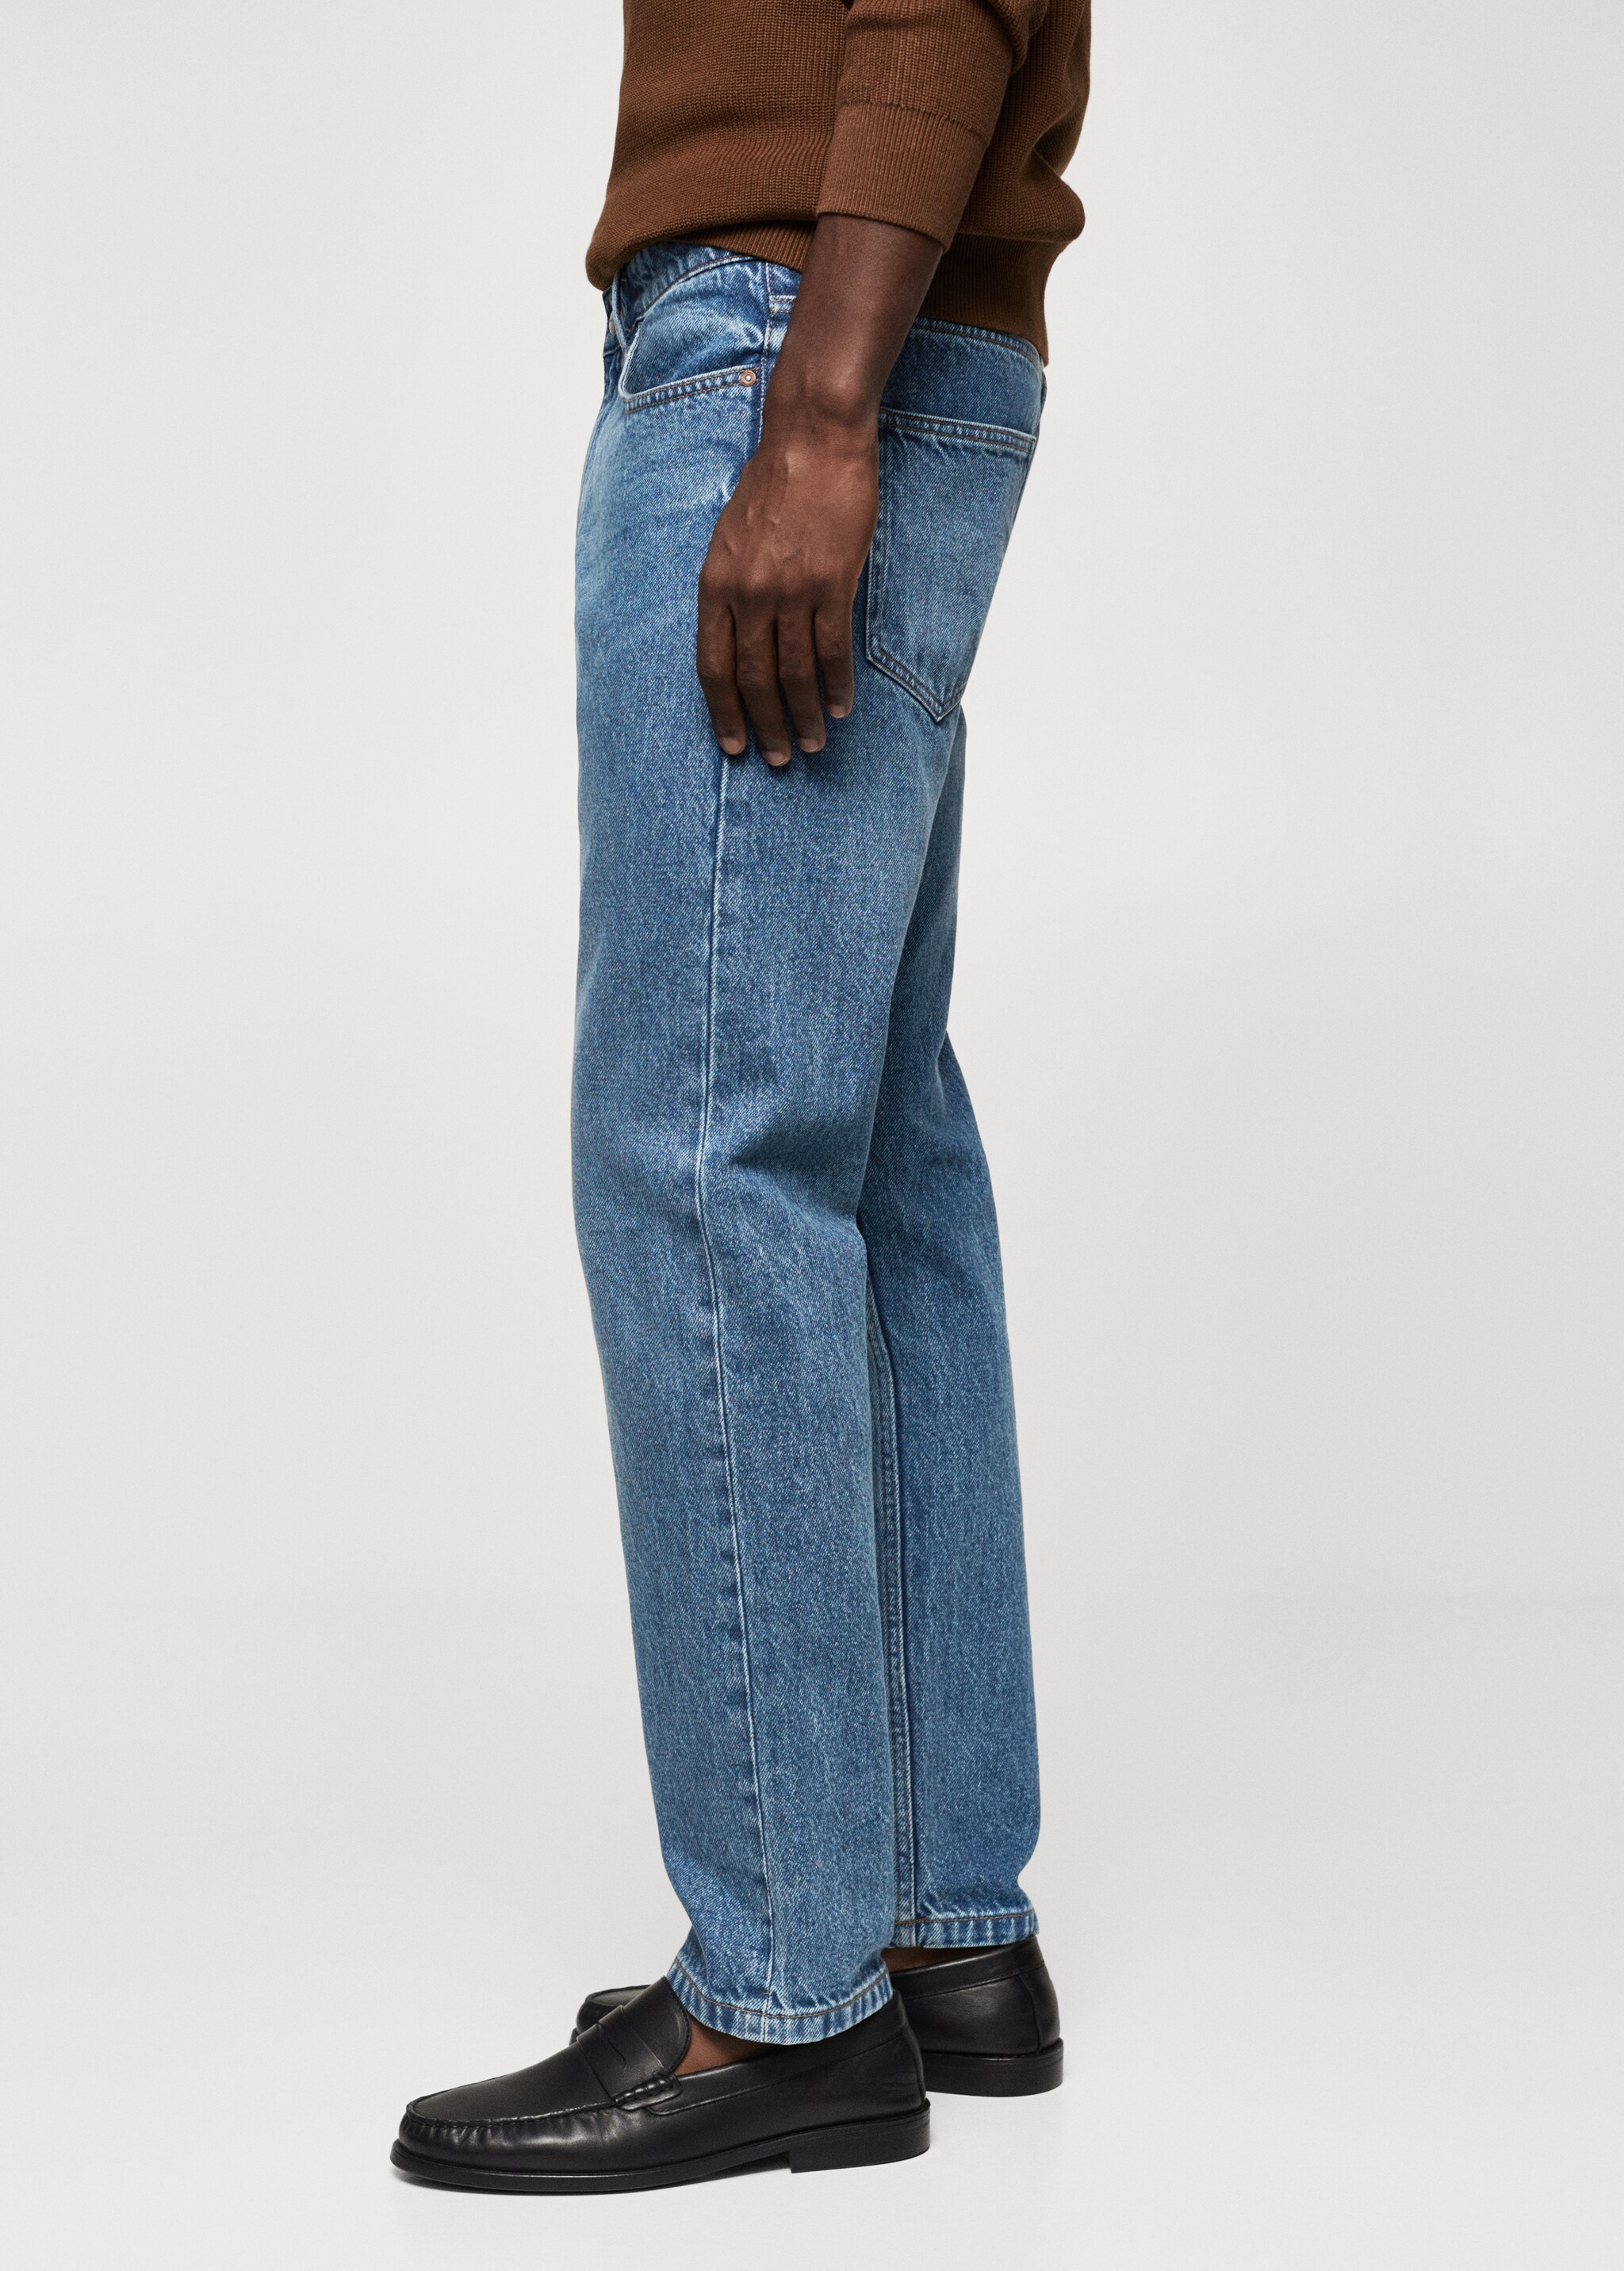 Jeans Bob Straight-fit - Artikkeldetalj 6